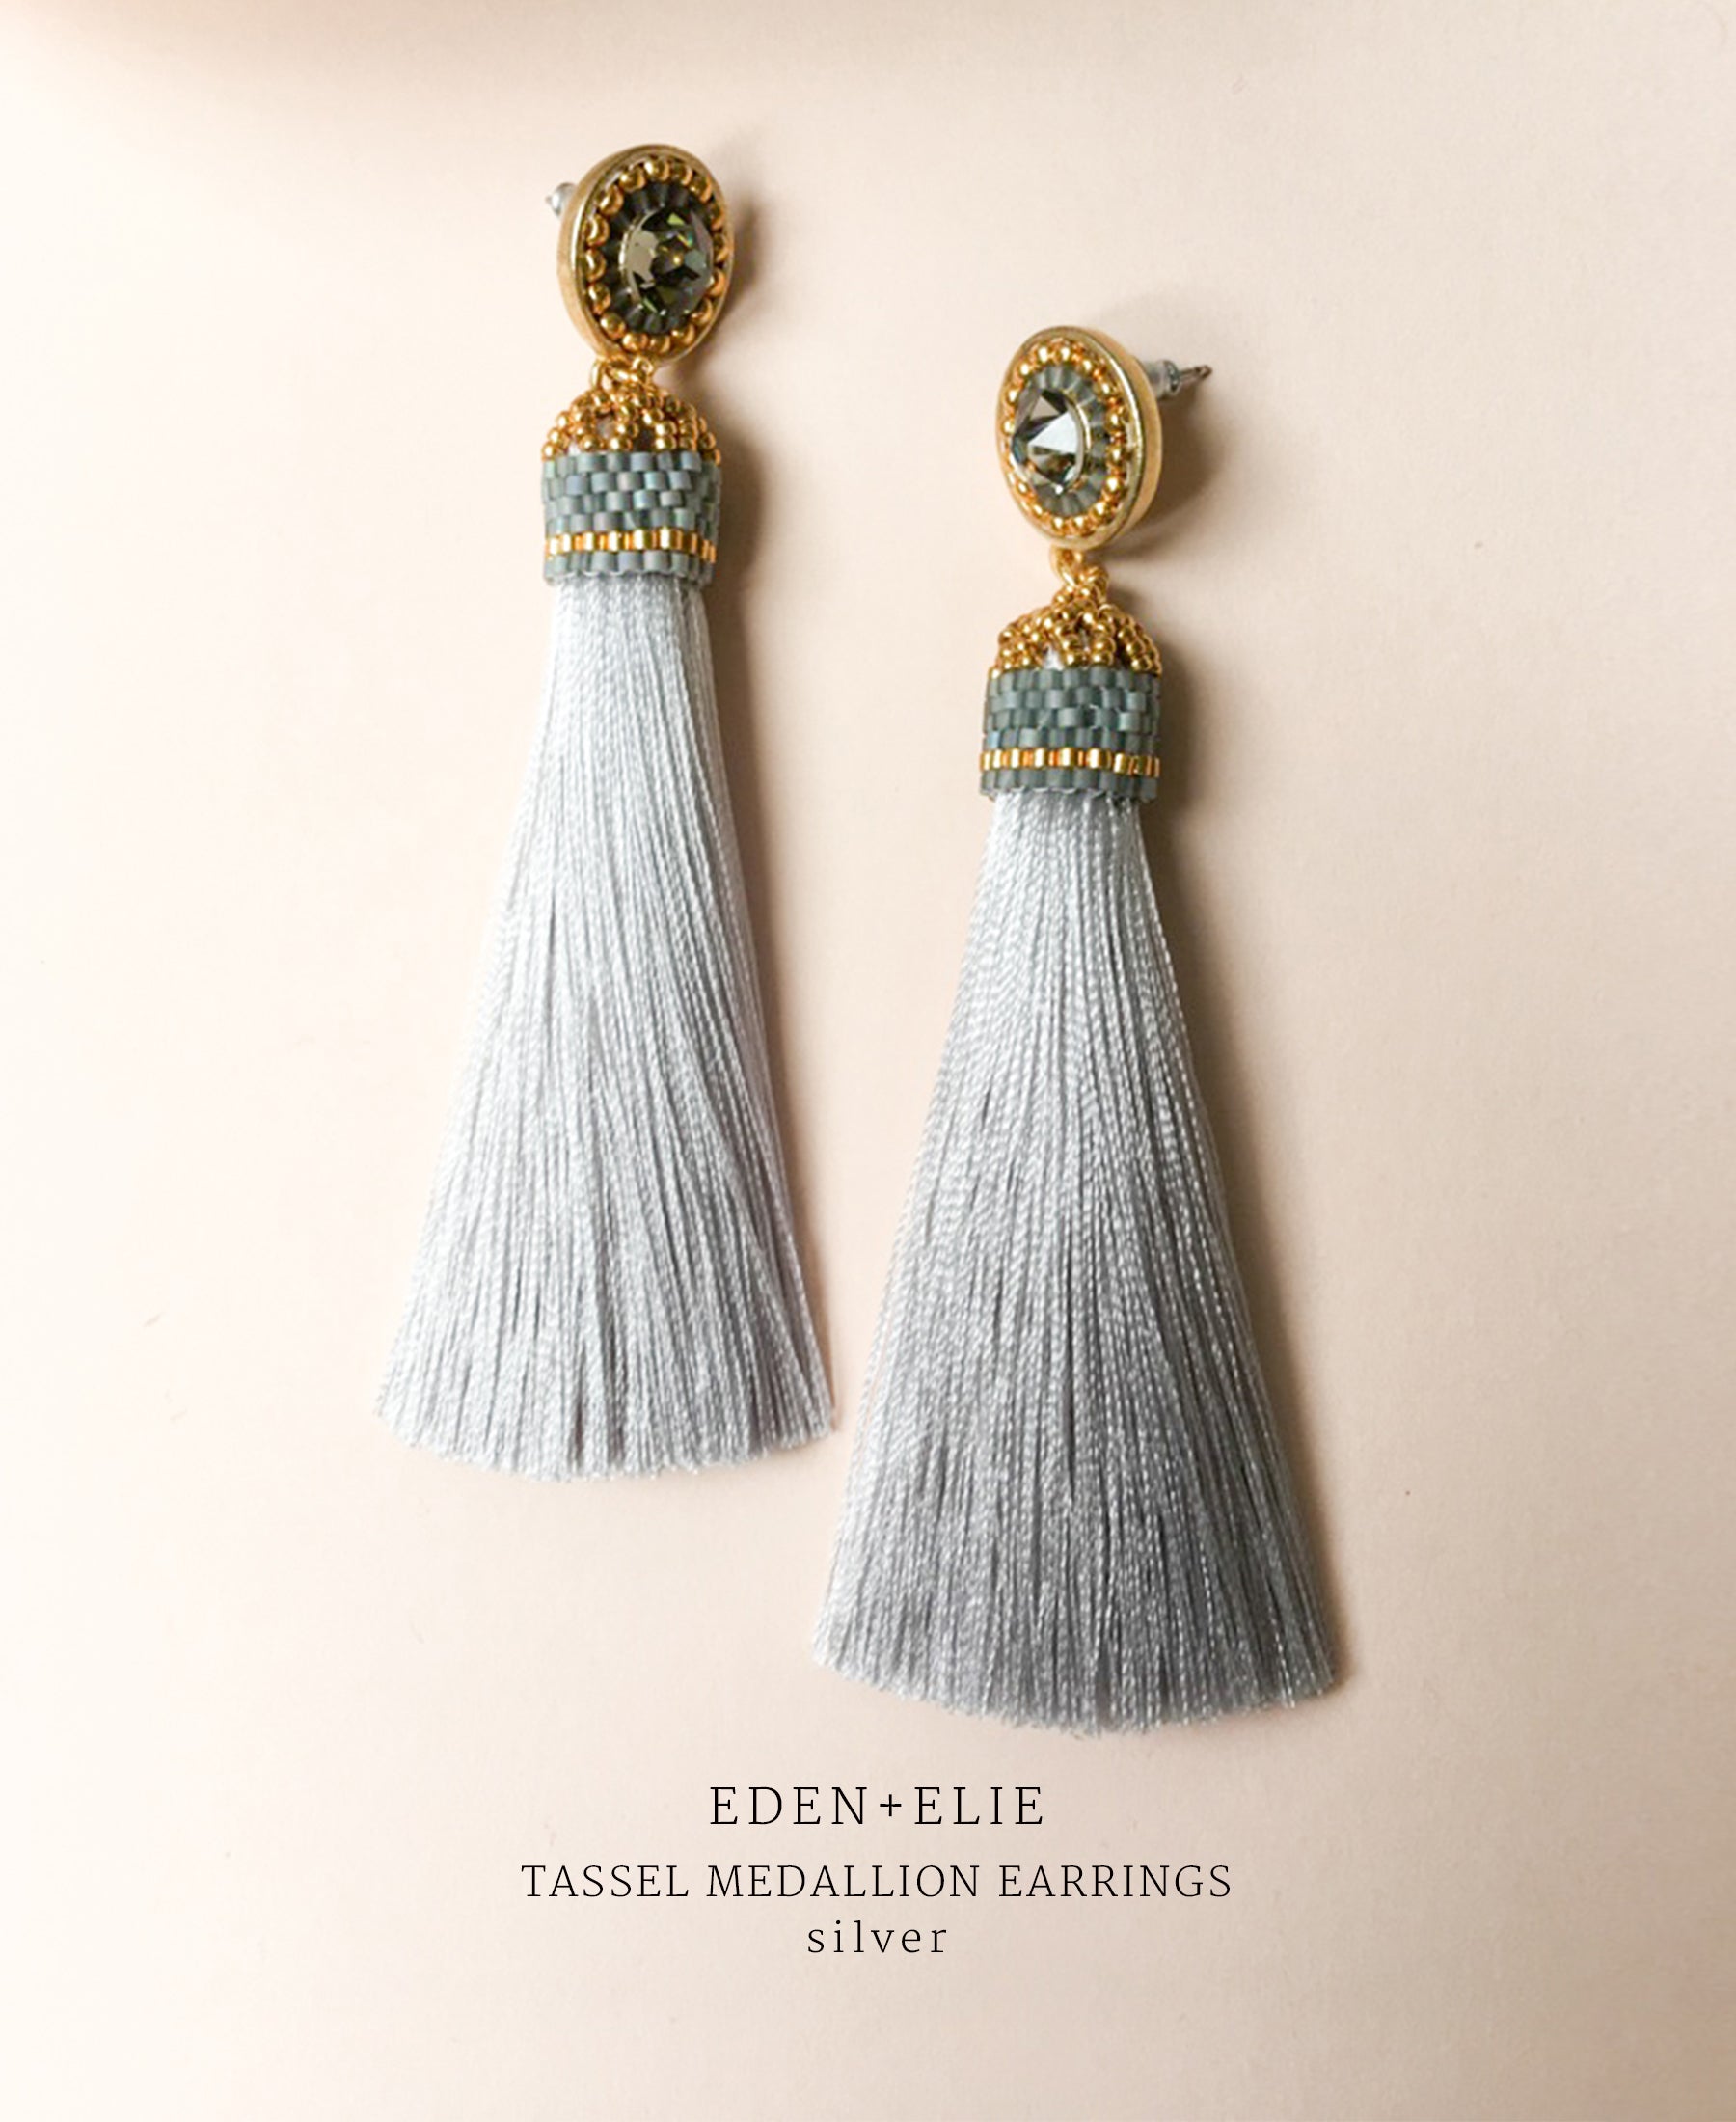 EDEN + ELIE silk tassel statement earrings - silver